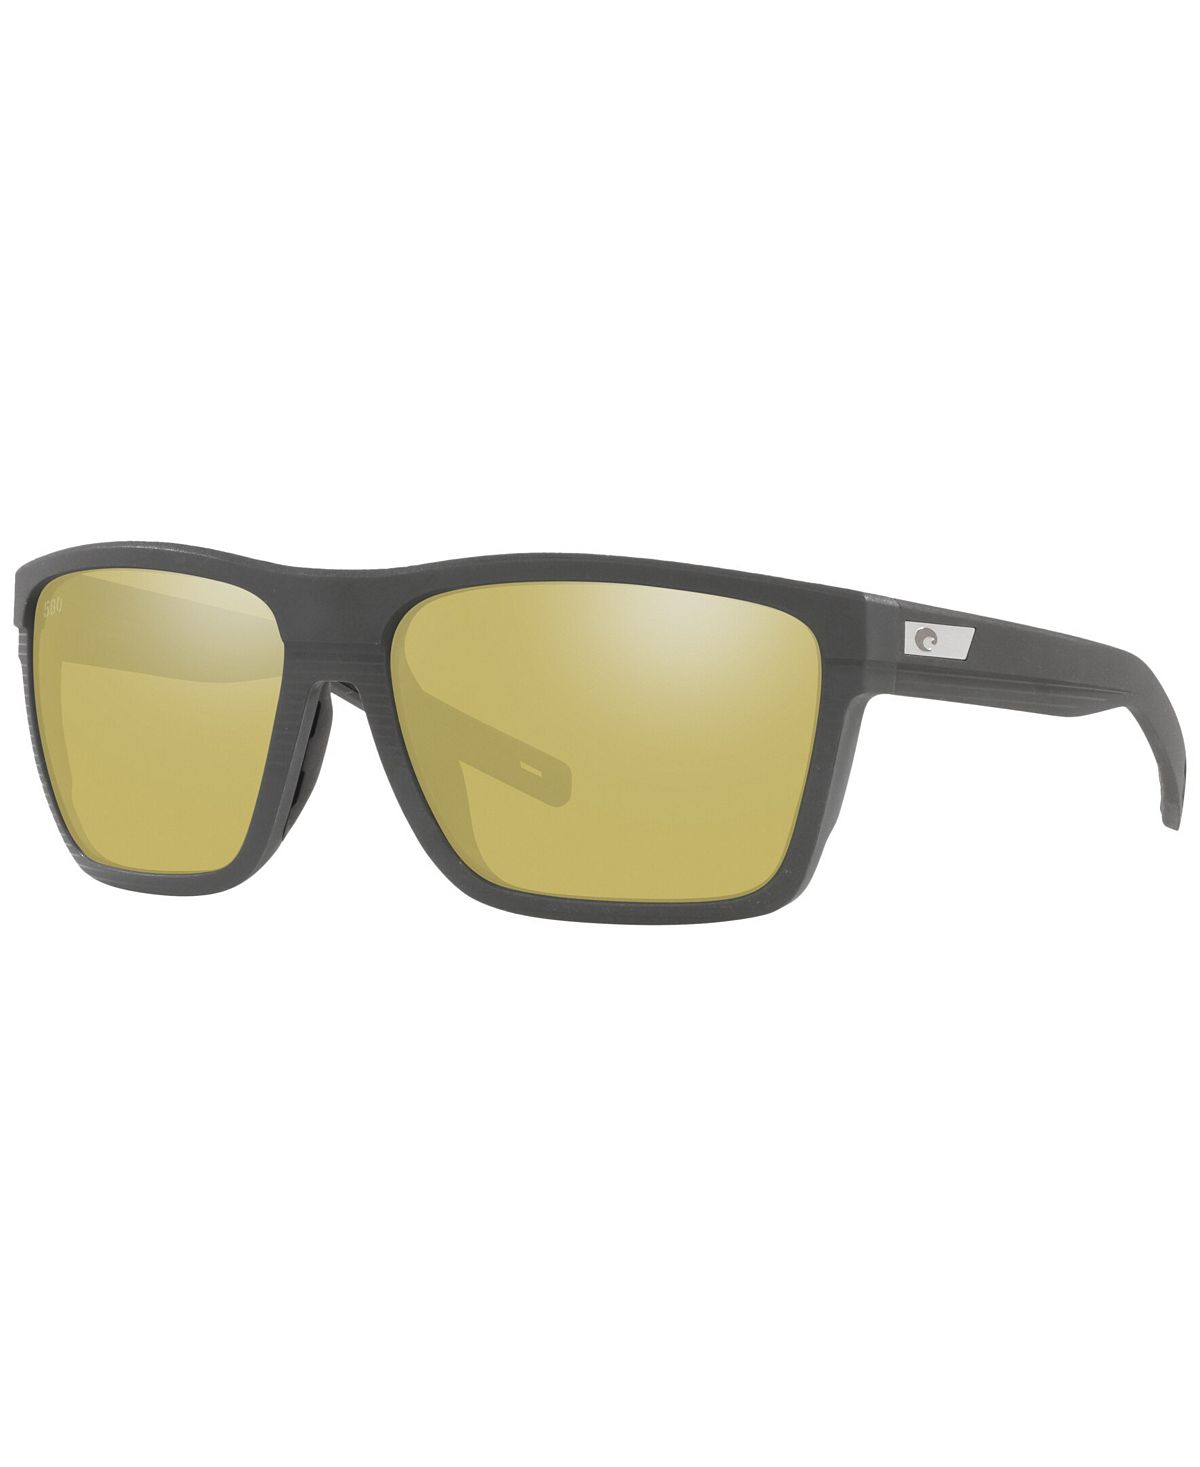 Мужские поляризованные солнцезащитные очки, Pargo 61 Costa Del Mar цена и фото